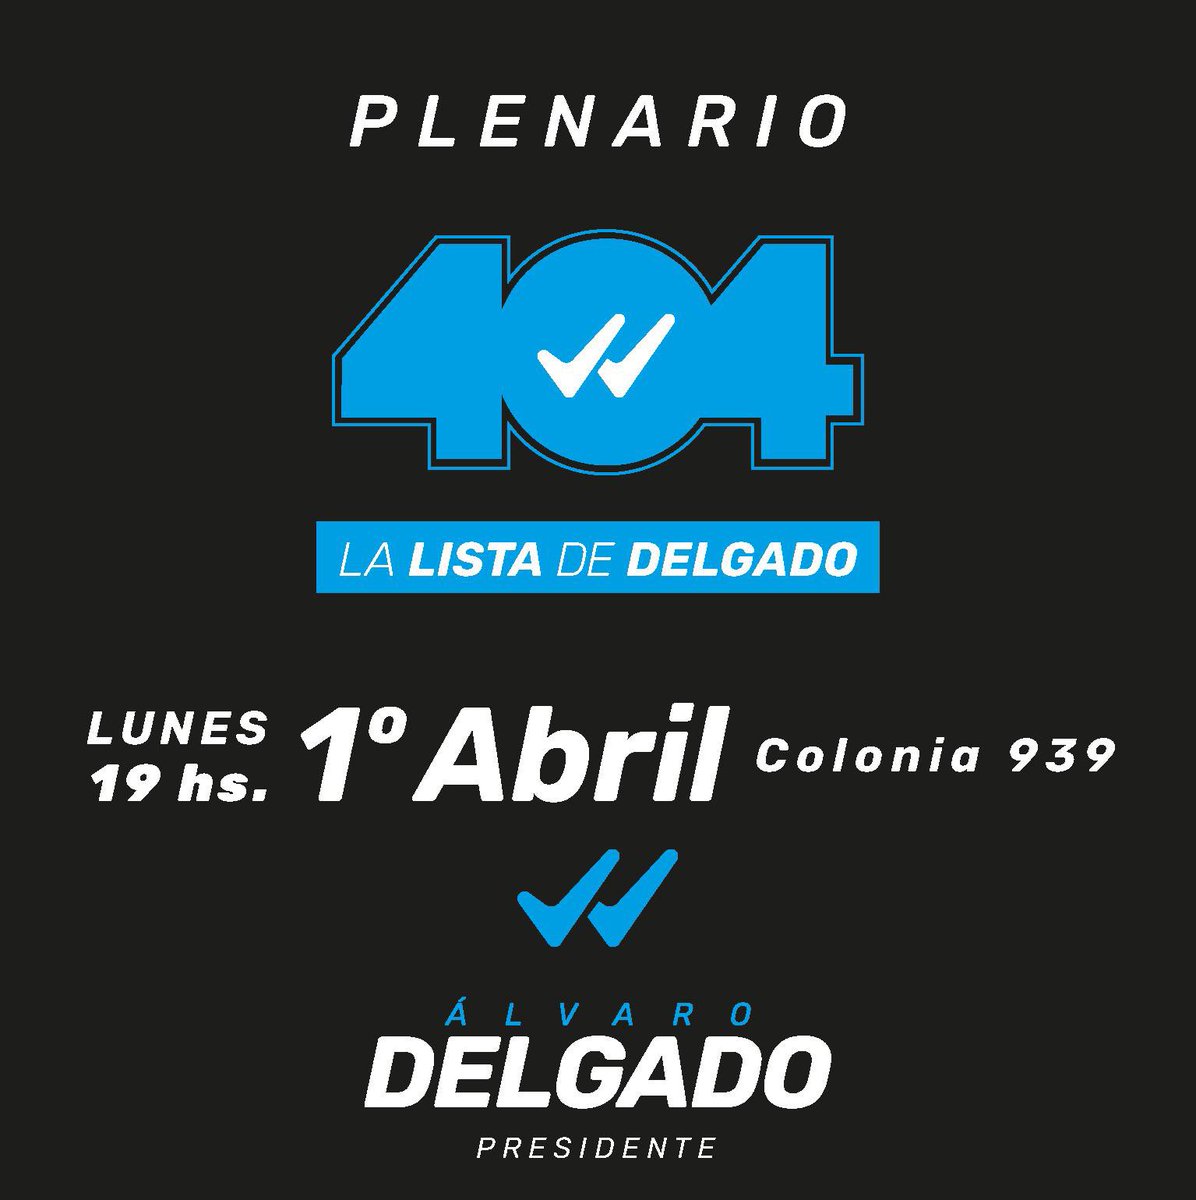 Te esperamos en un nuevo Plenario 404 🗓️Lunes 1 de Abril 🕖19:00hs 📍Colonia 939 esq. Río Branco #404LaListaDeDelgado